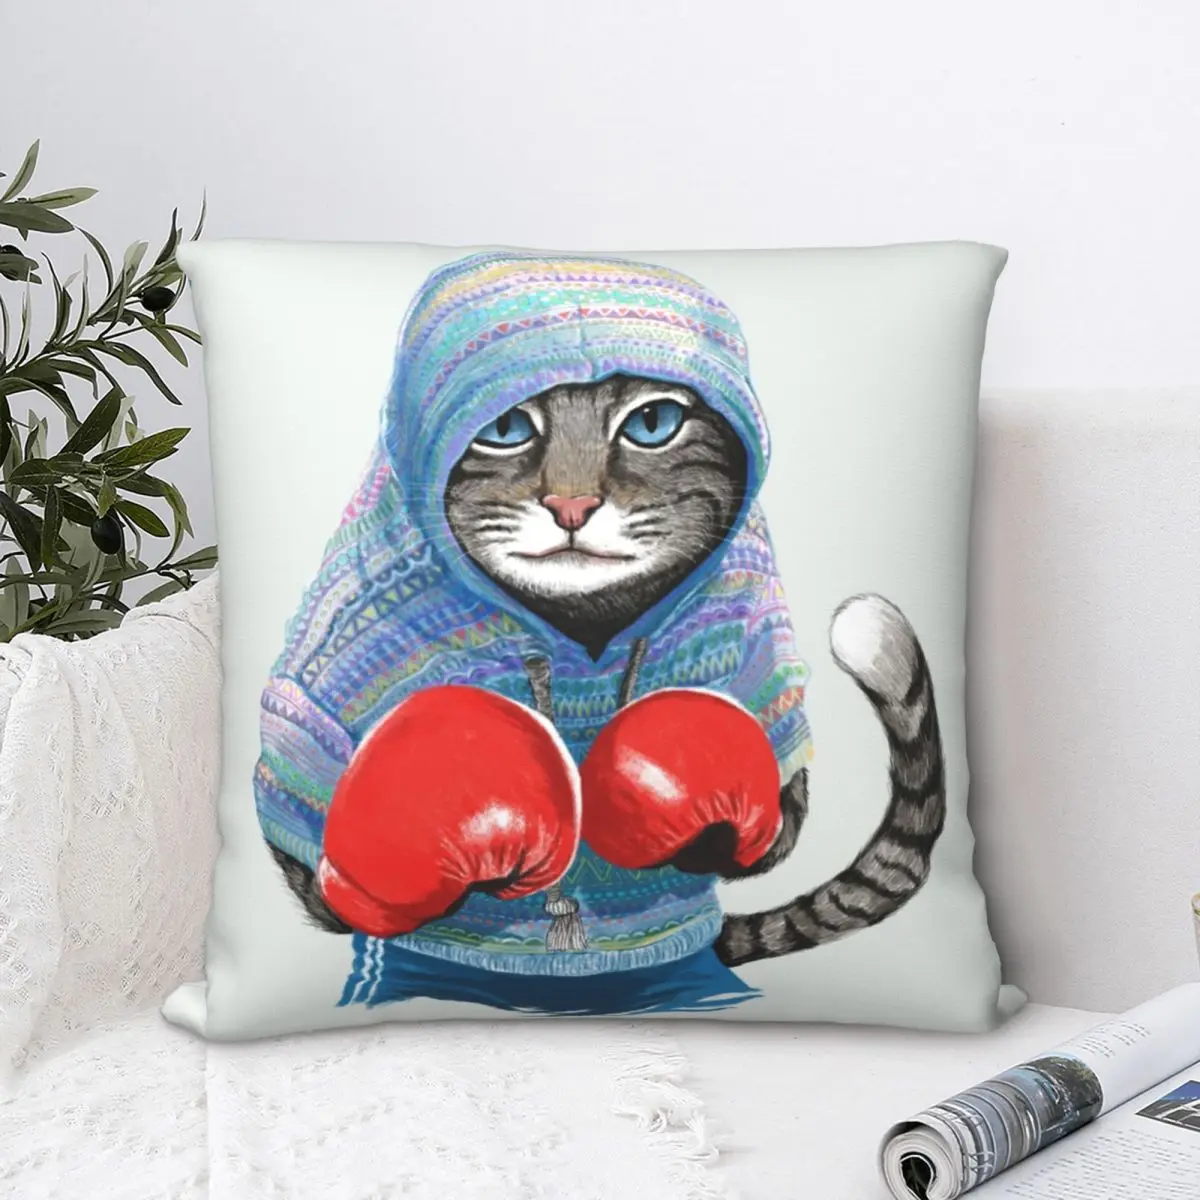 Квадратный чехол для подушки с изображением боксерской кошки, Забавный домашний декоративный чехол из полиэстера для диванной подушки, про...